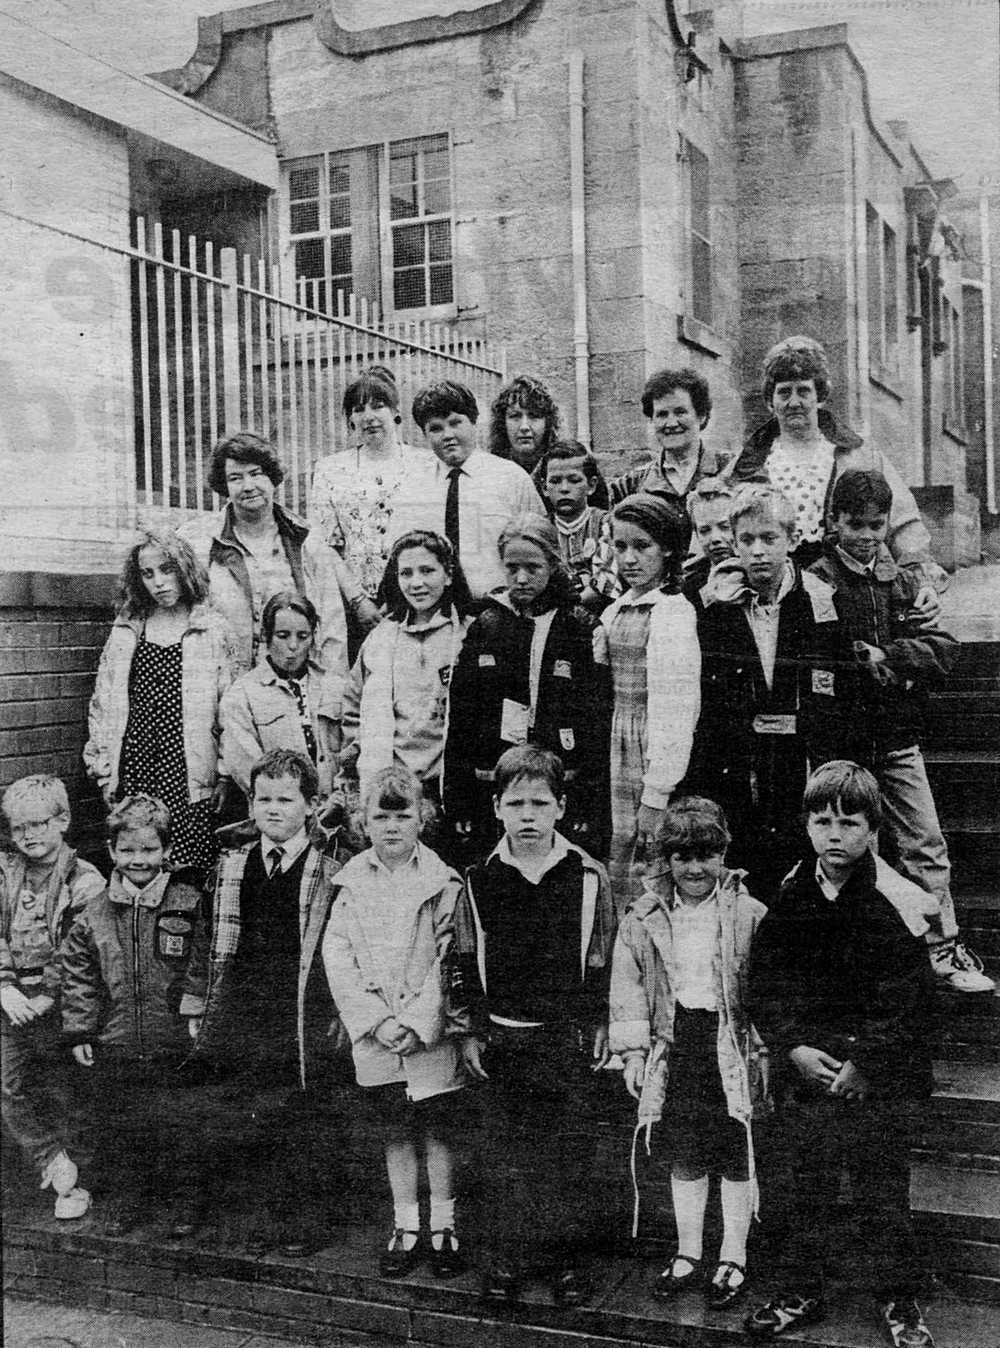 Auchenheath Primary School closing in 1992